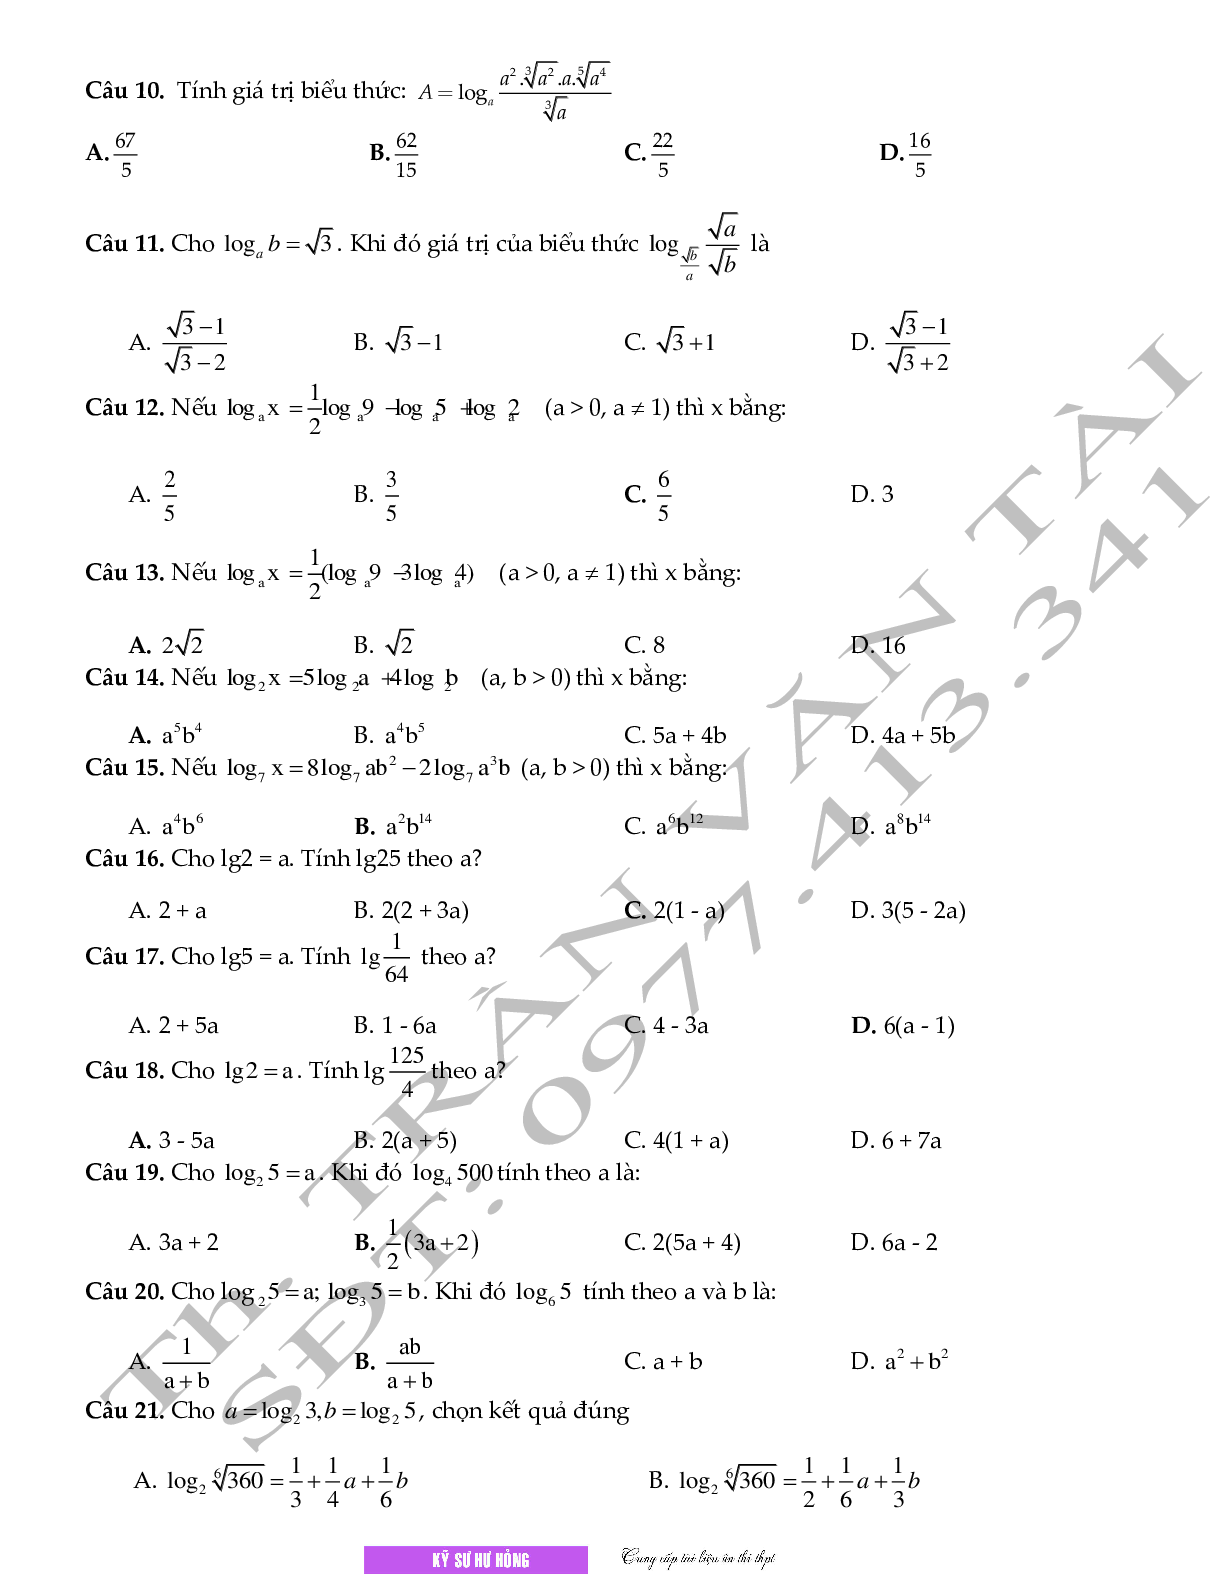 Chuyên đề Mũ - logarit môn Toán lớp 12 (trang 7)